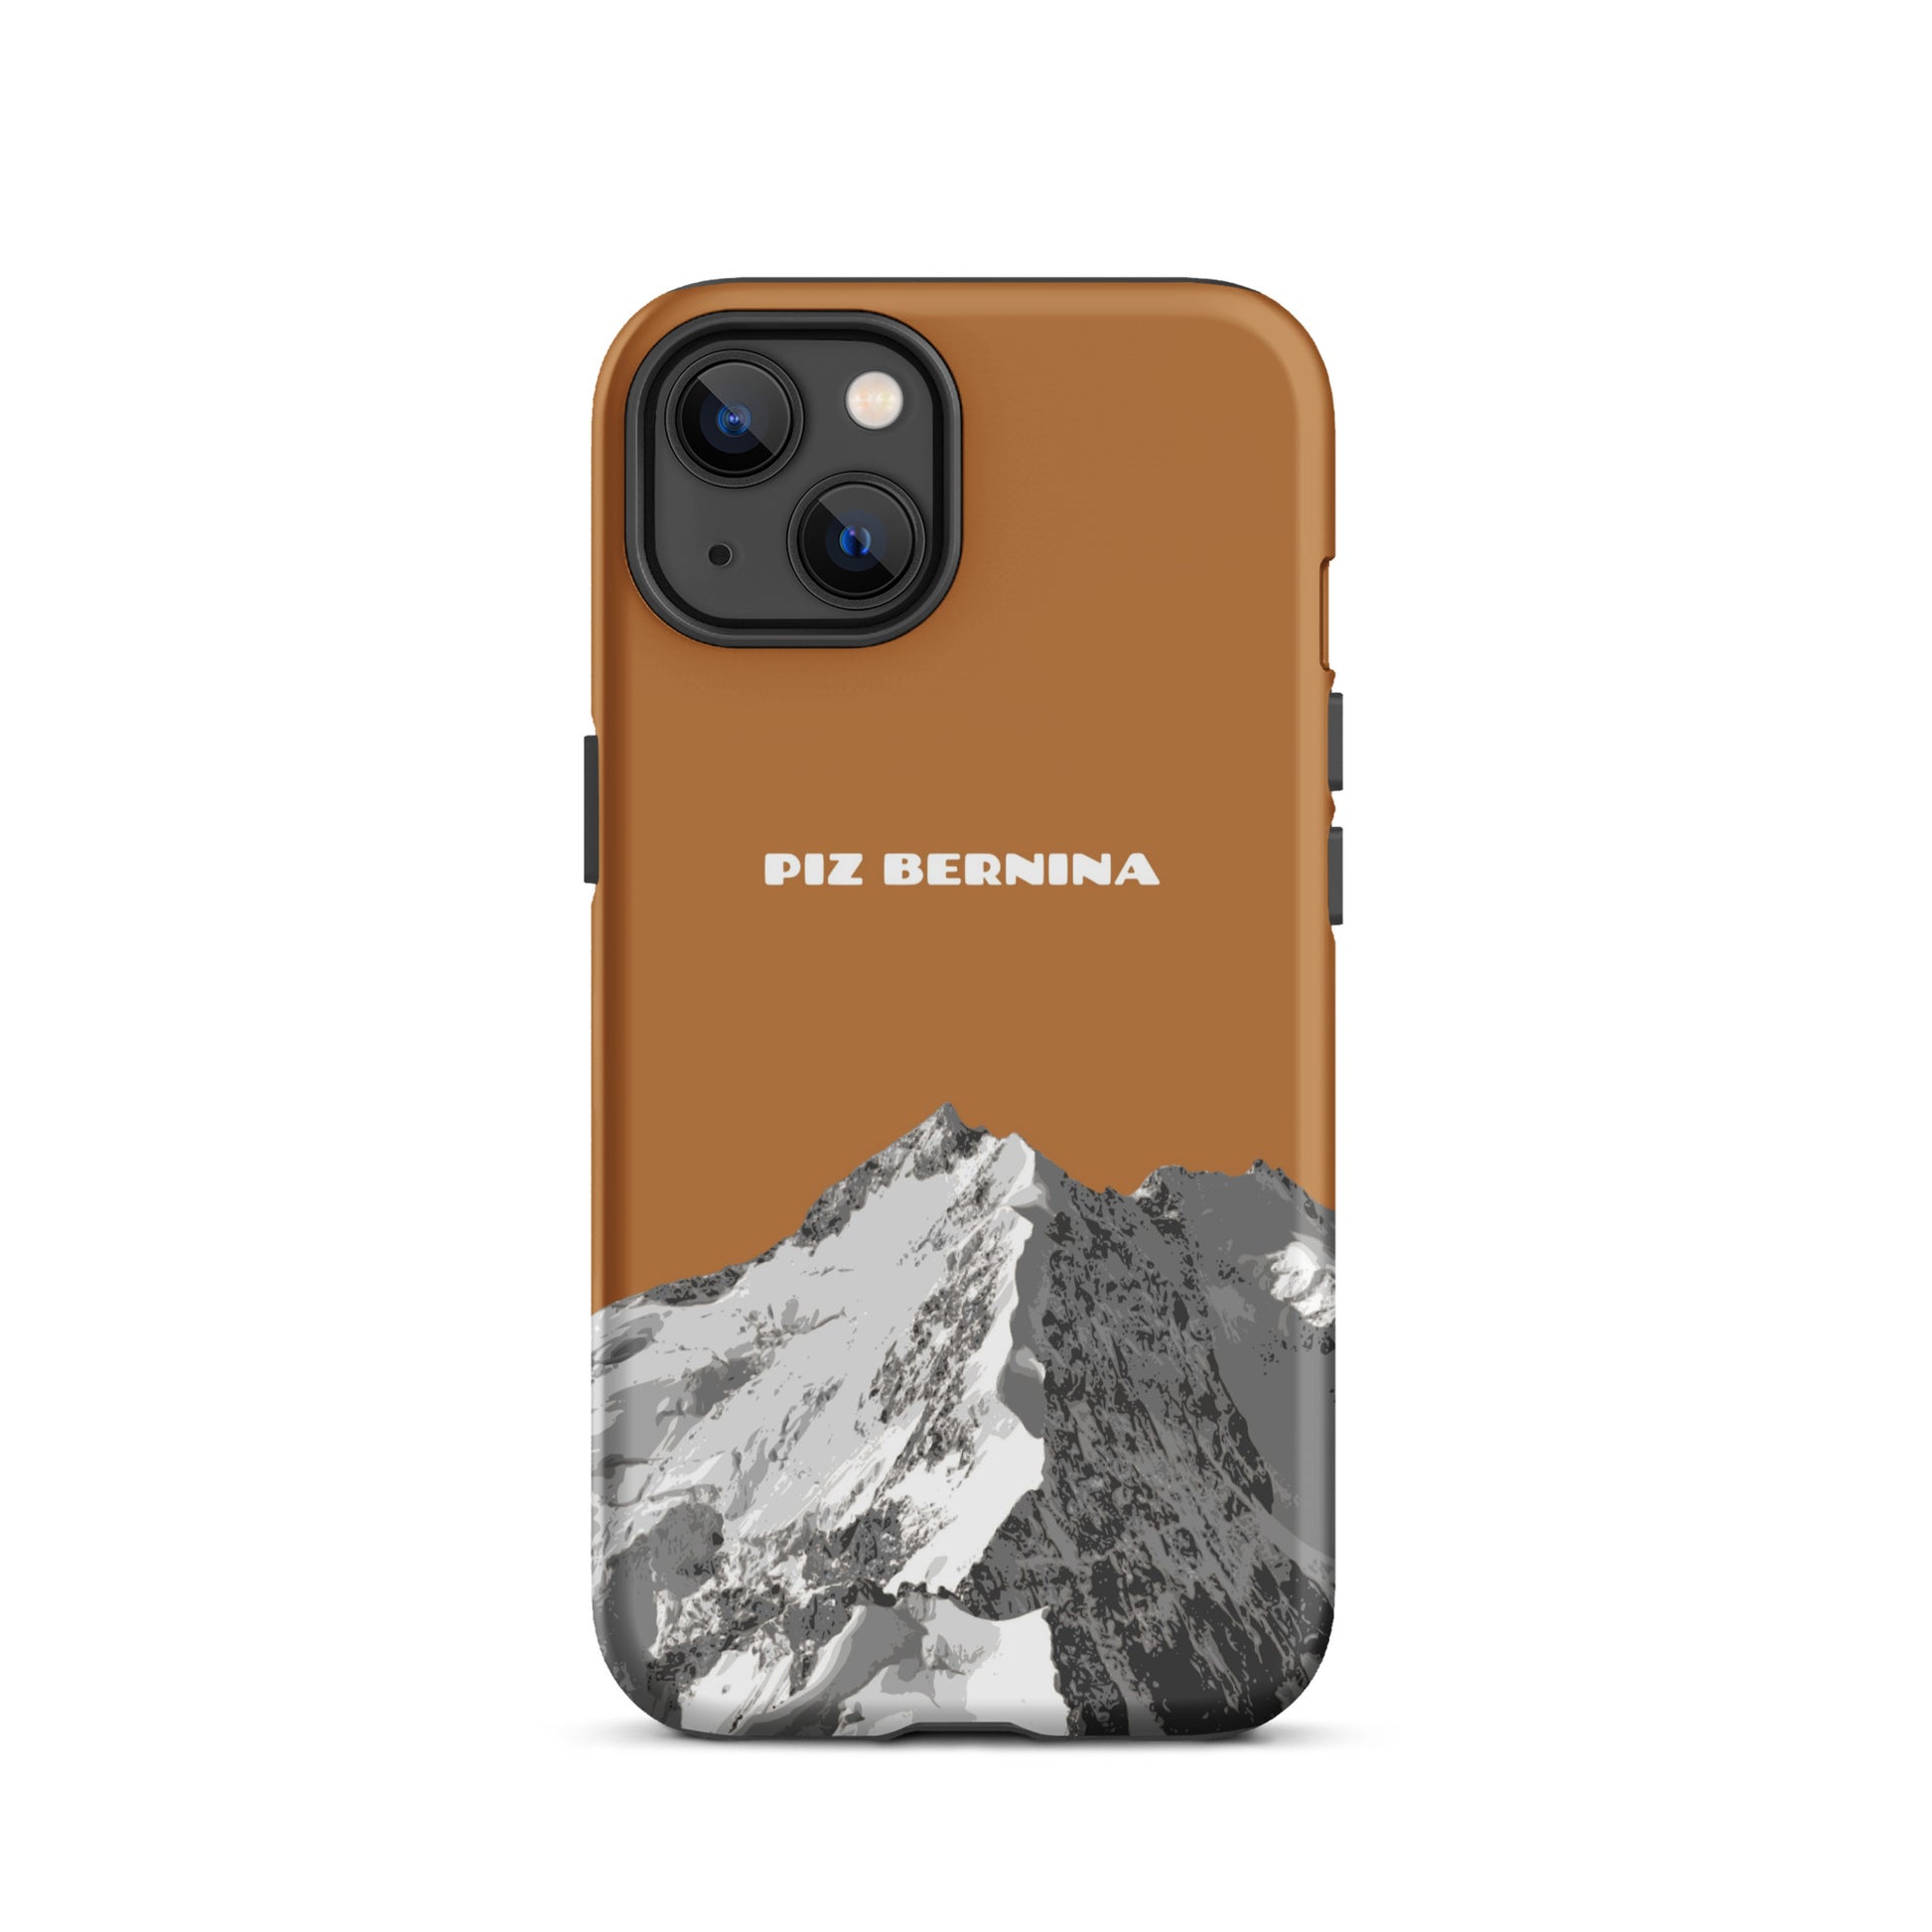 Hülle für das iPhone 13 von Apple in der Farbe Kupfer, dass den Piz Bernina in Graubünden zeigt.